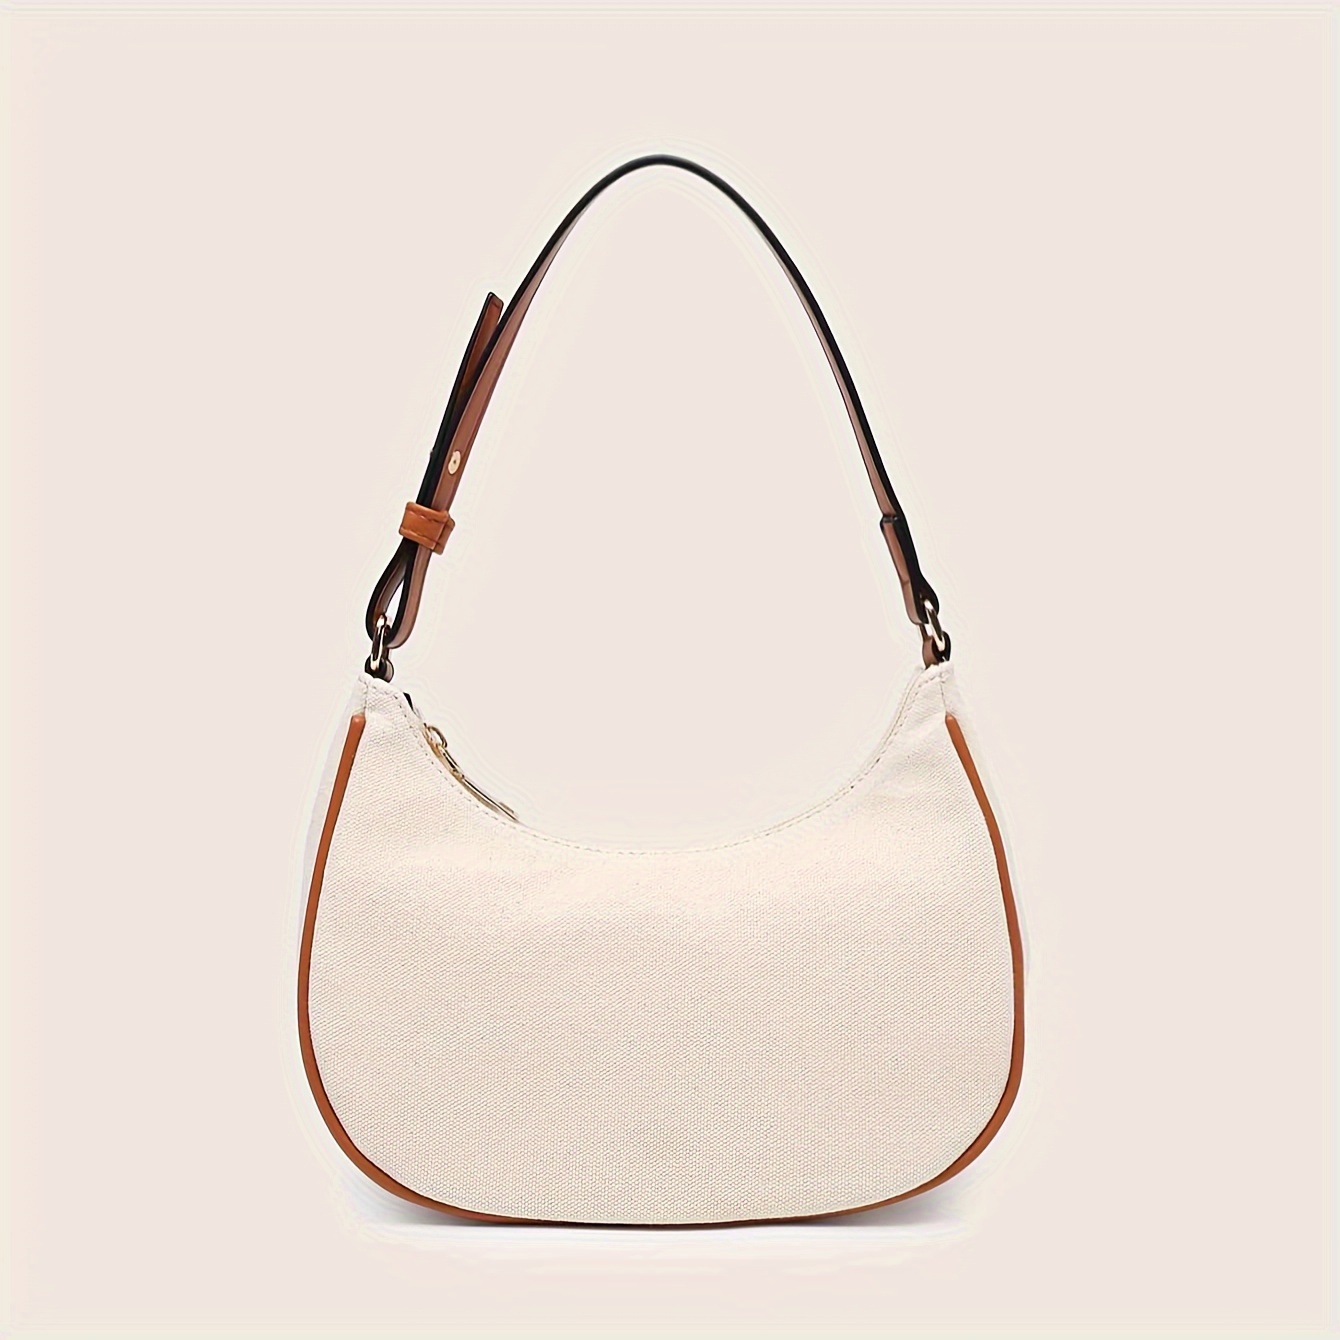 Trendy Minimalist Crescent Bag, Solid Color Underarm Bag, Pu